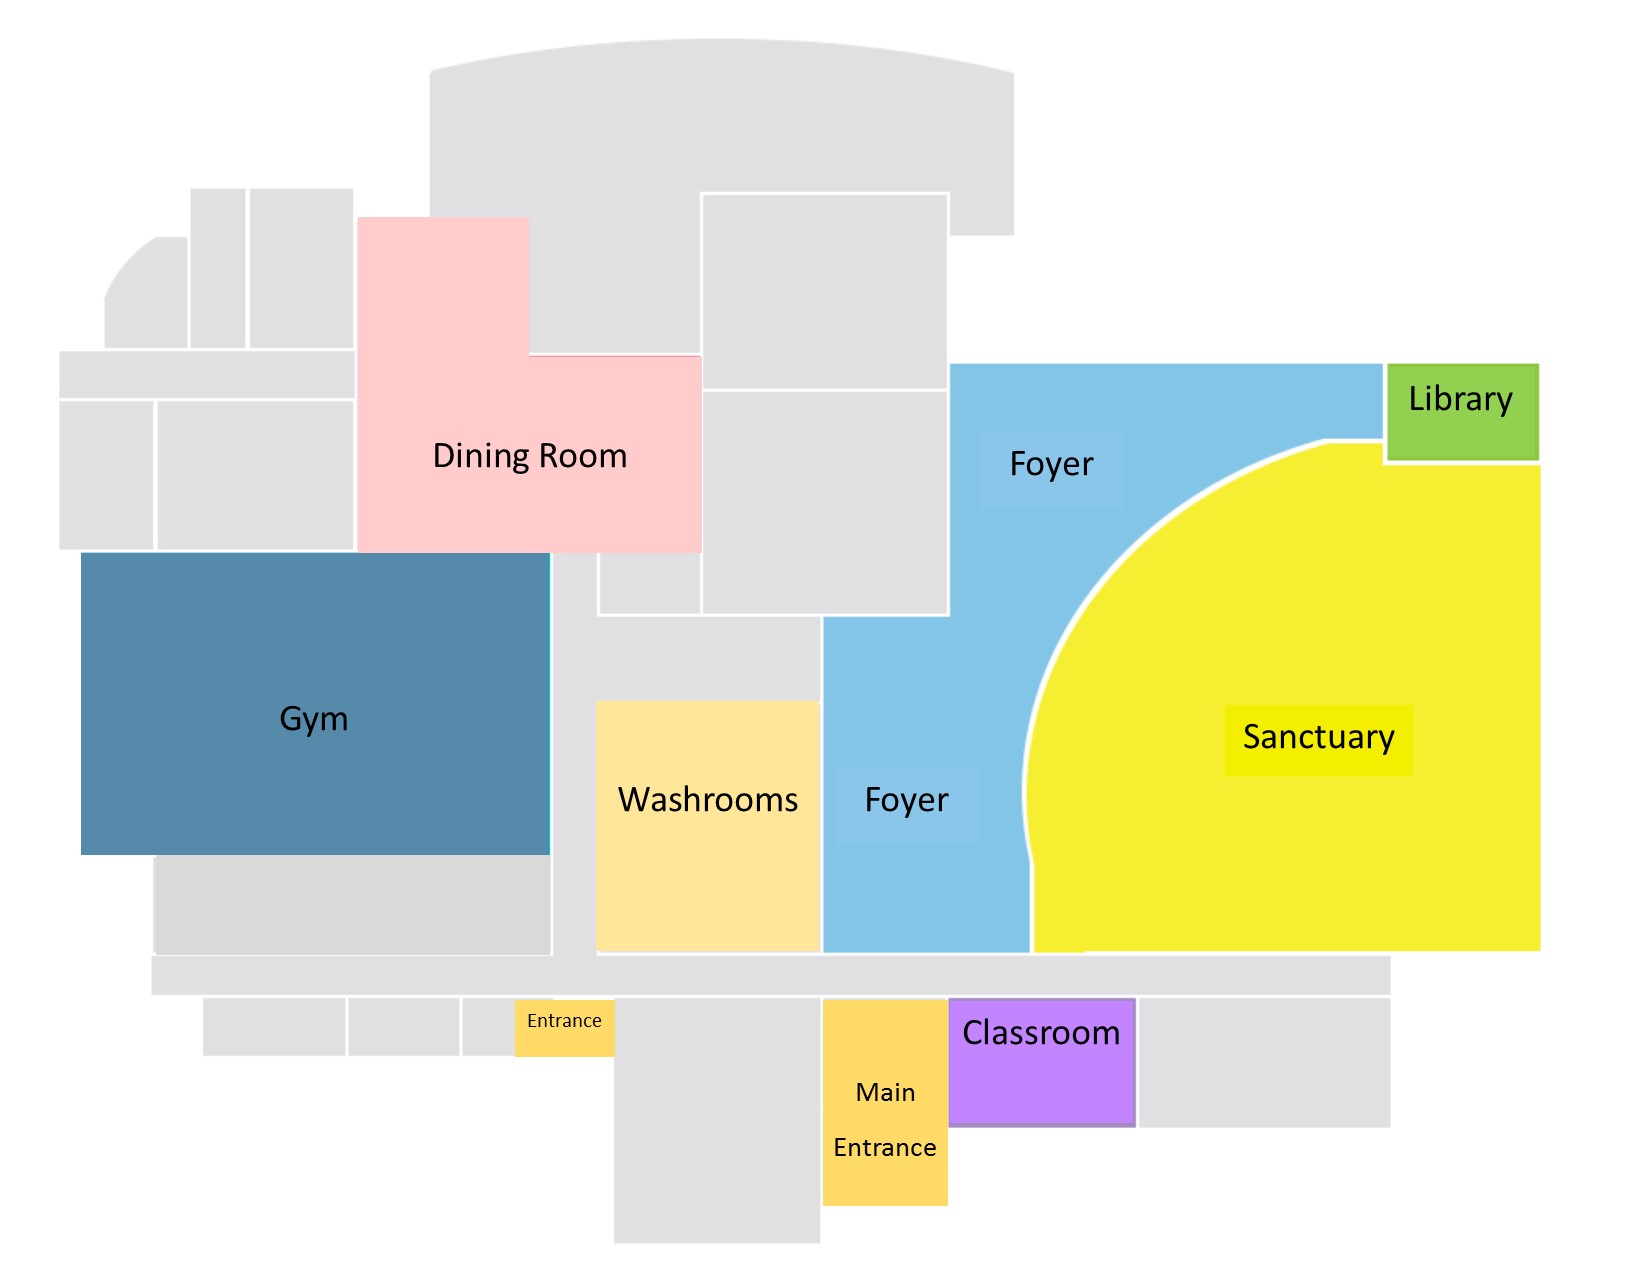 Facility map